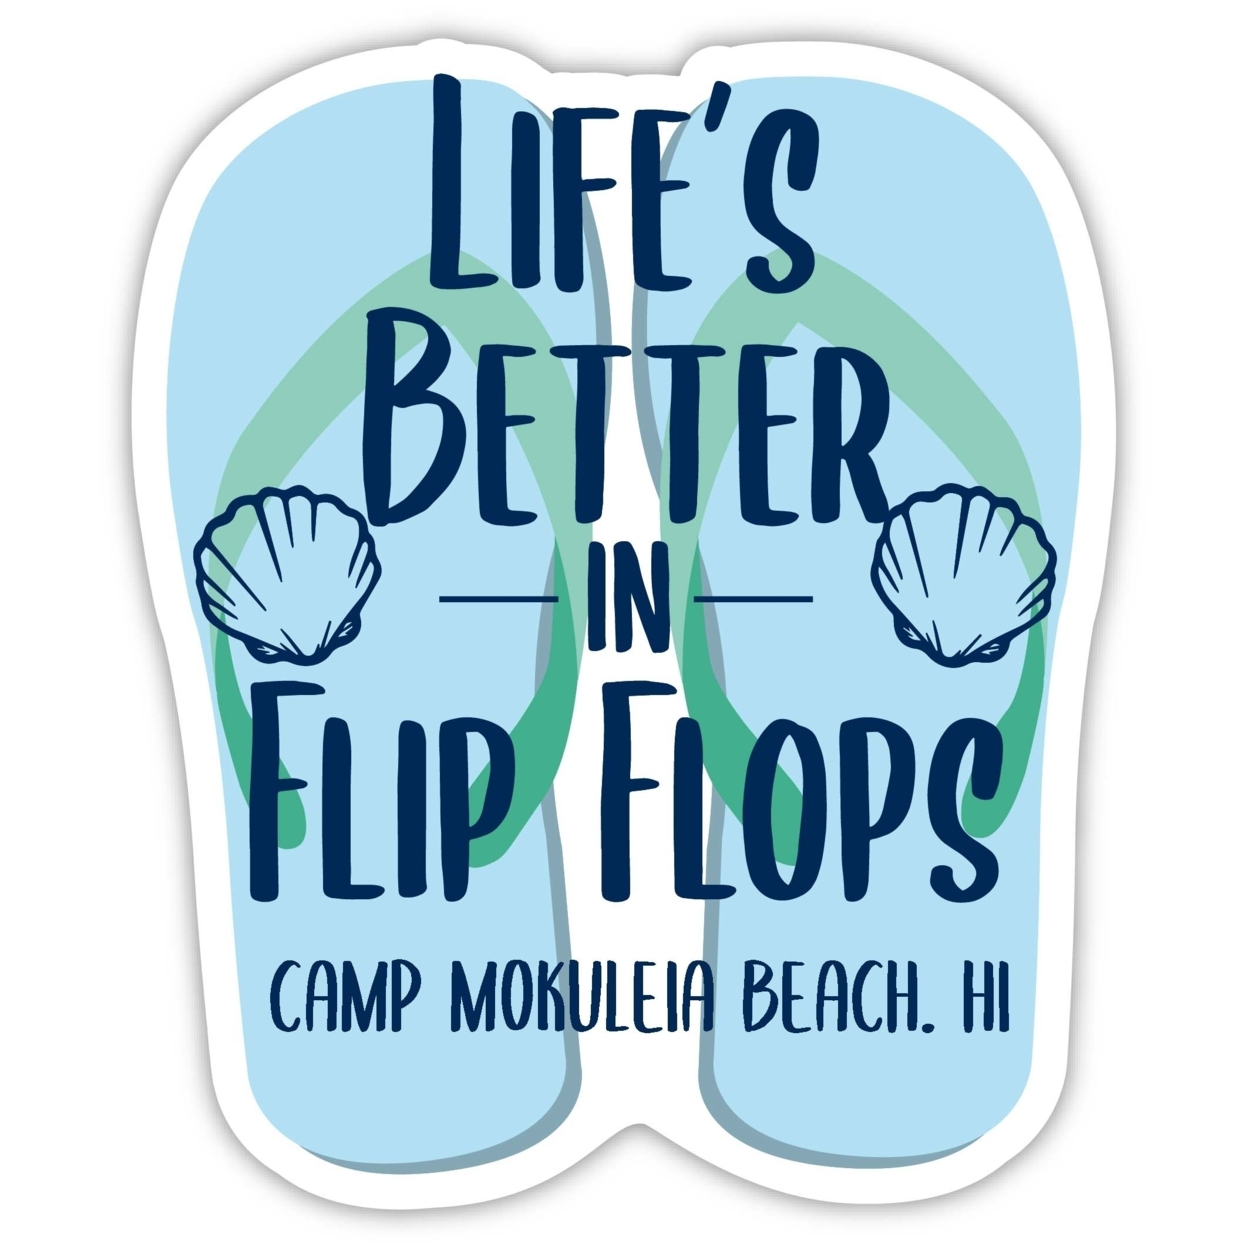 Camp Mokuleia Beach Hawaii Souvenir 4 Inch Vinyl Decal Sticker Flip Flop Design